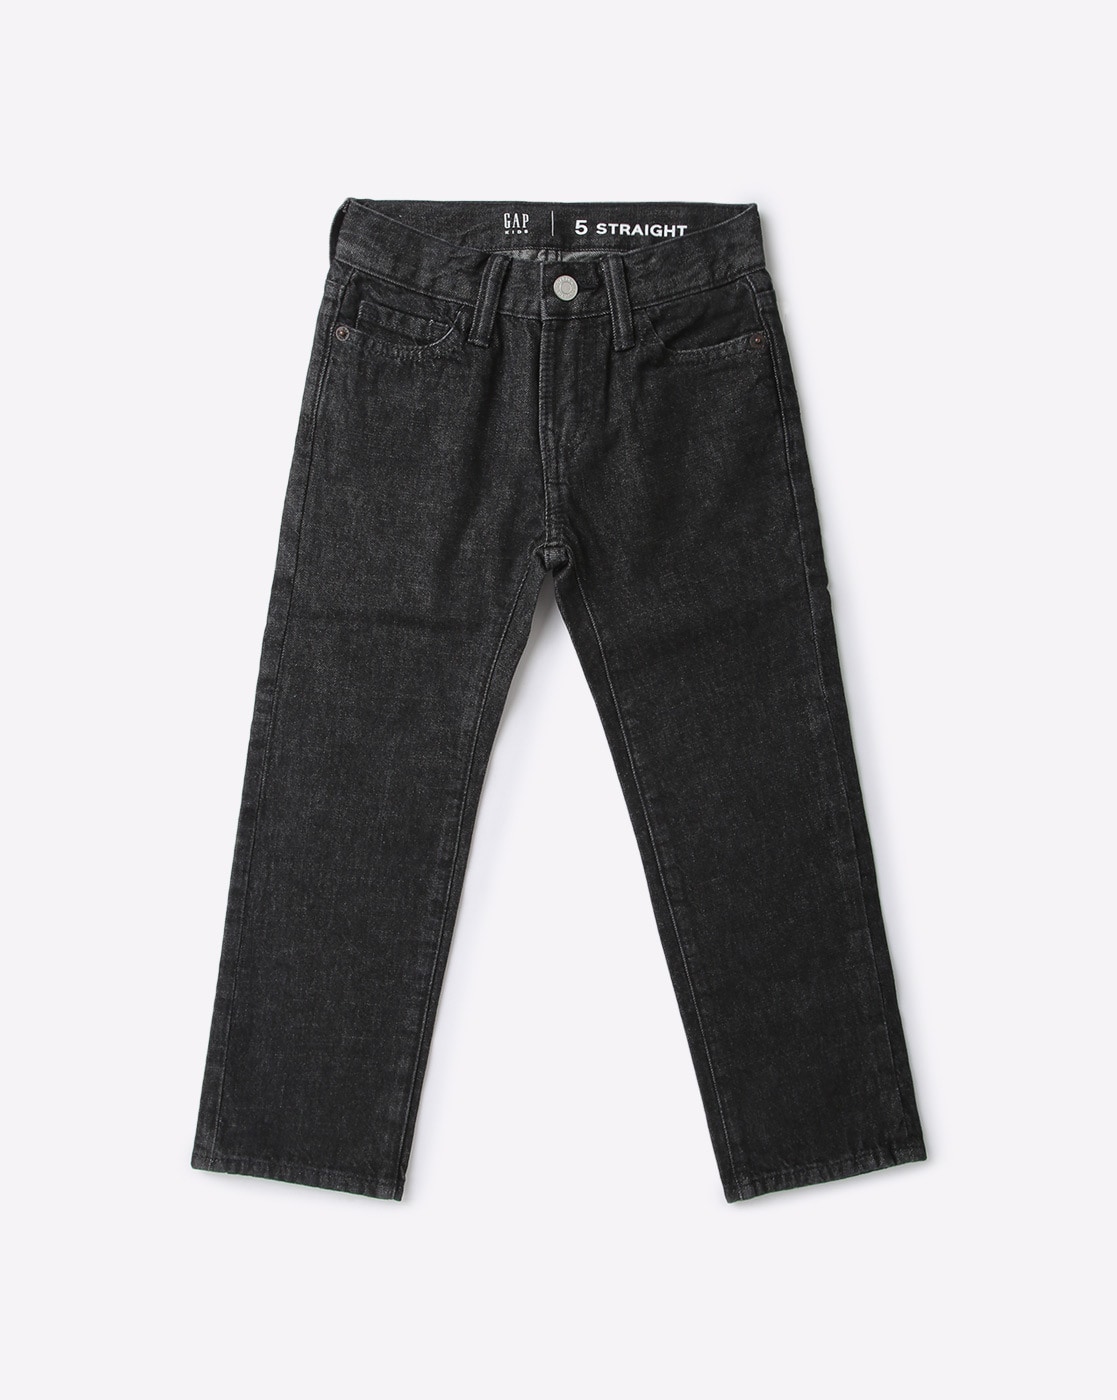 kidsclosetyxe, Lot 59- 2-3 Zara jeans , 3y Gap light wash, 3y black jean/  pants, 3y Gap jeans- $20